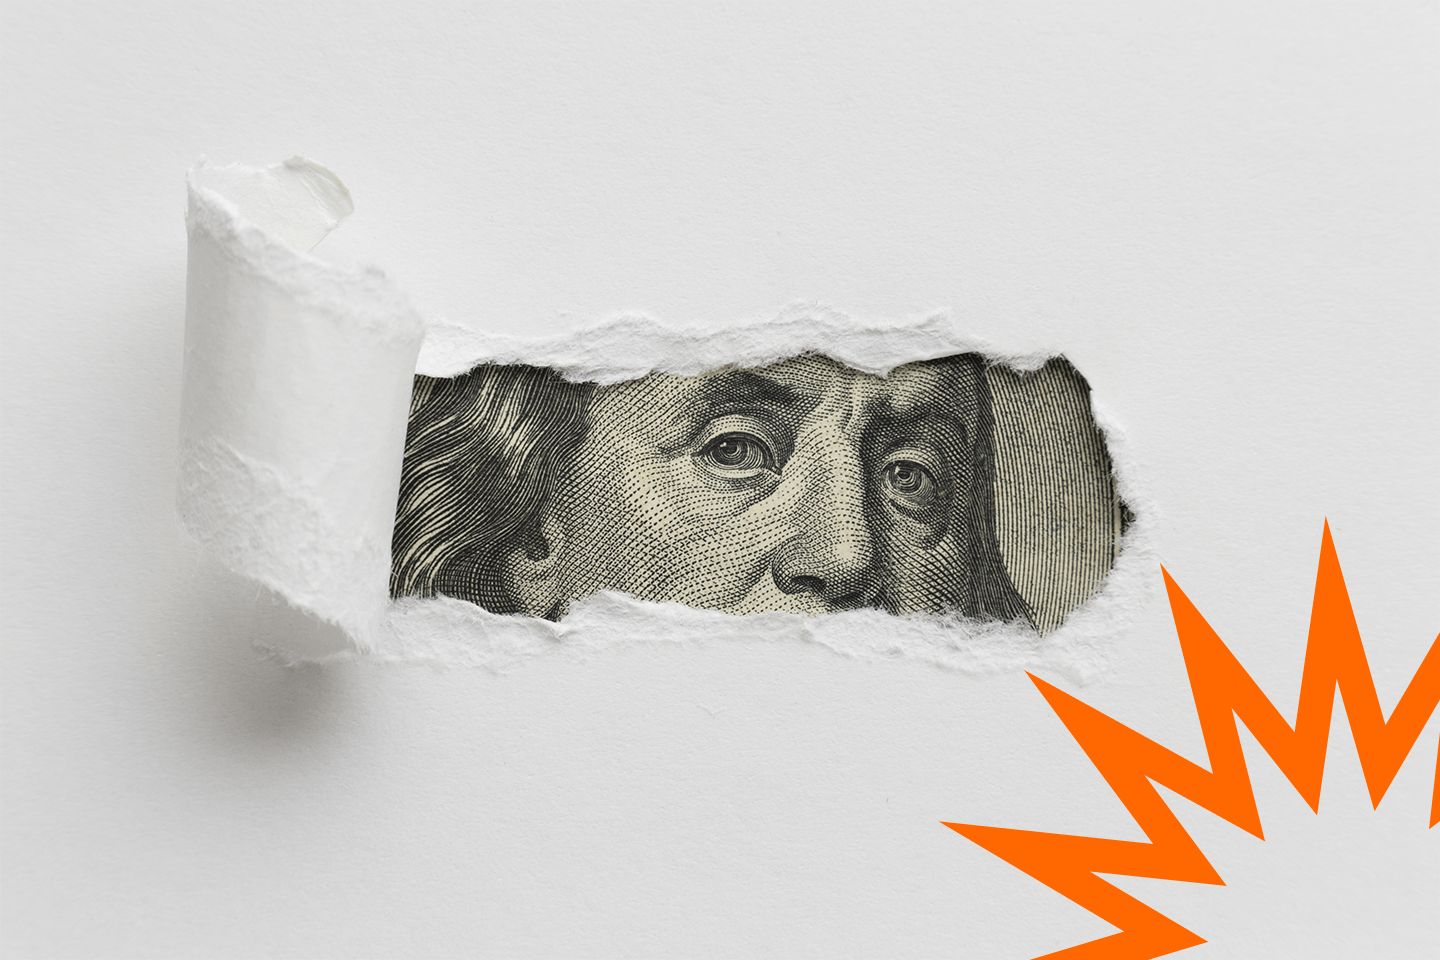 Arte com uma nota de dólar